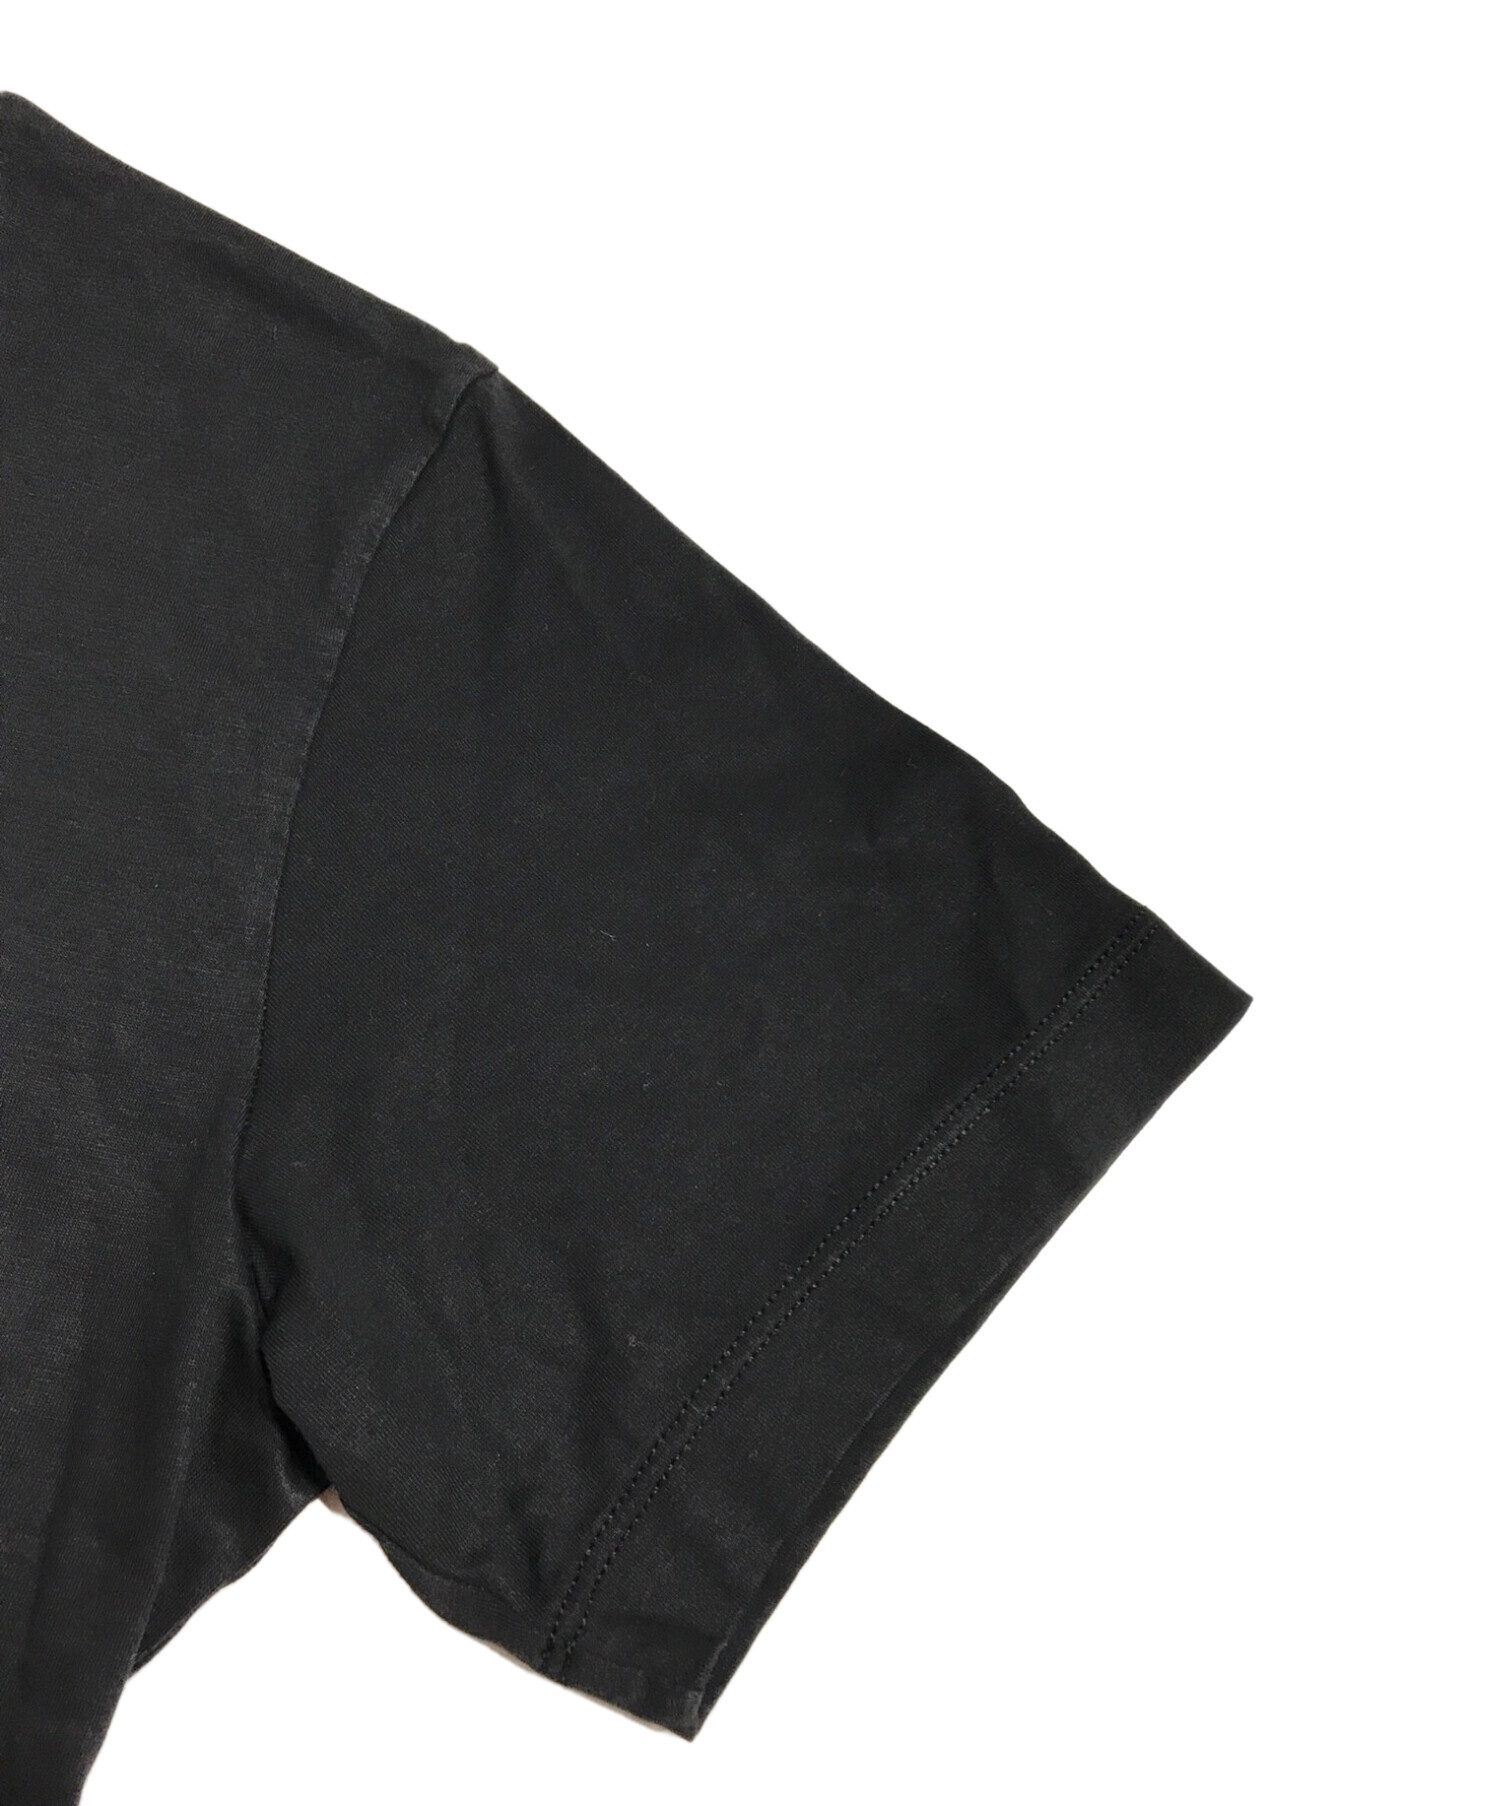 DSQUARED2 (ディースクエアード) プリントTシャツロゴ ブラック サイズ:S